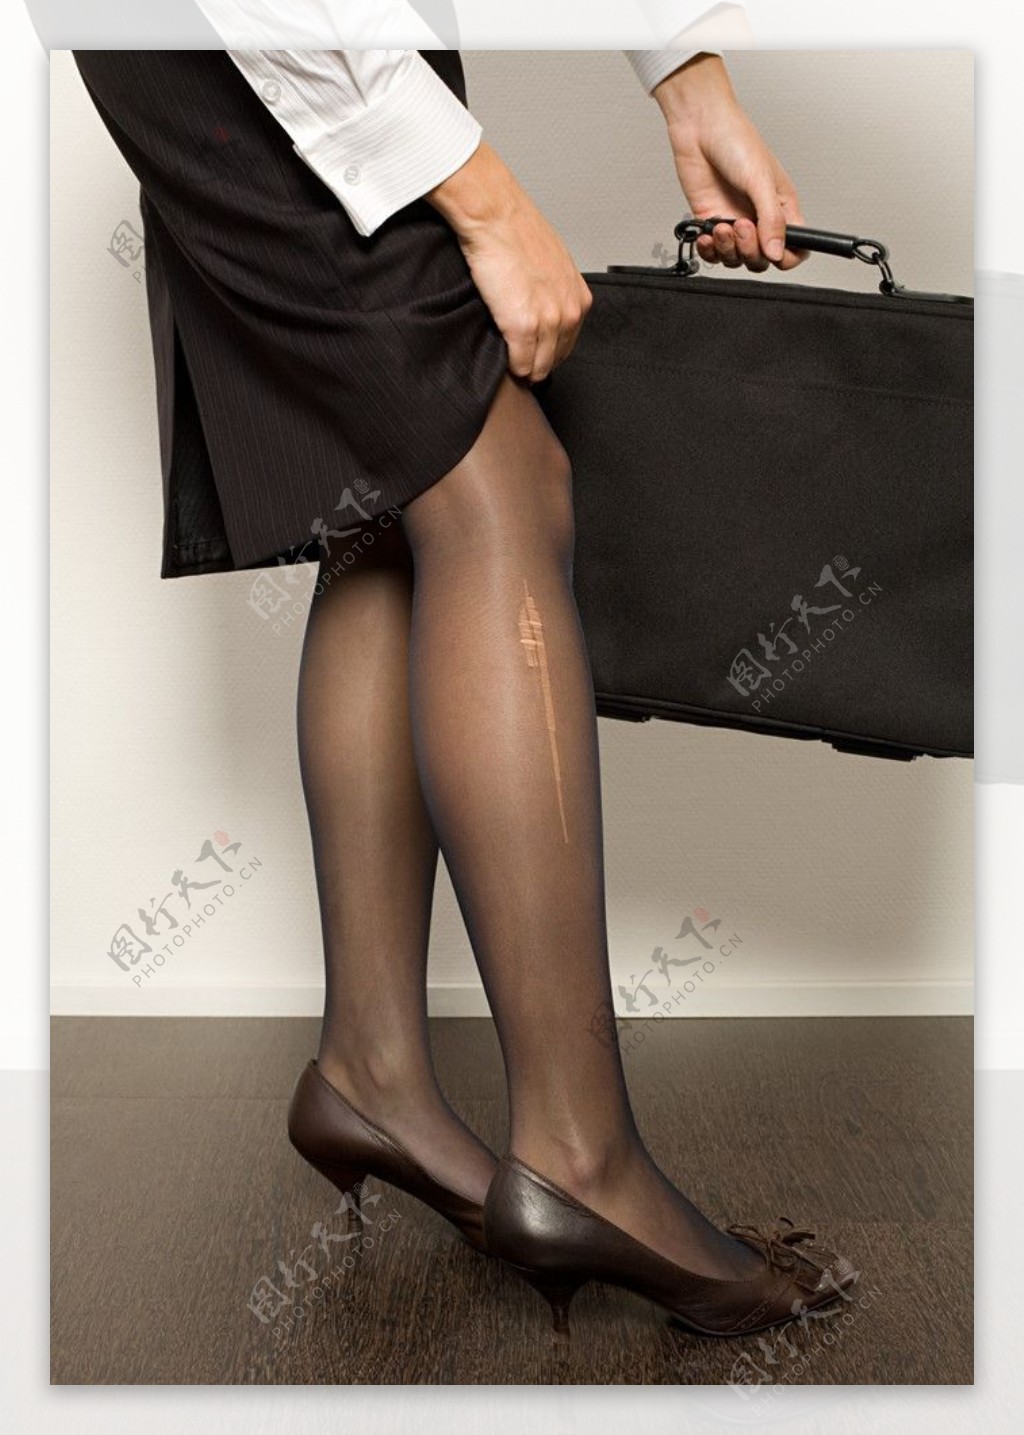 手提公文包看划破长袜的商务美女性感美腿图片